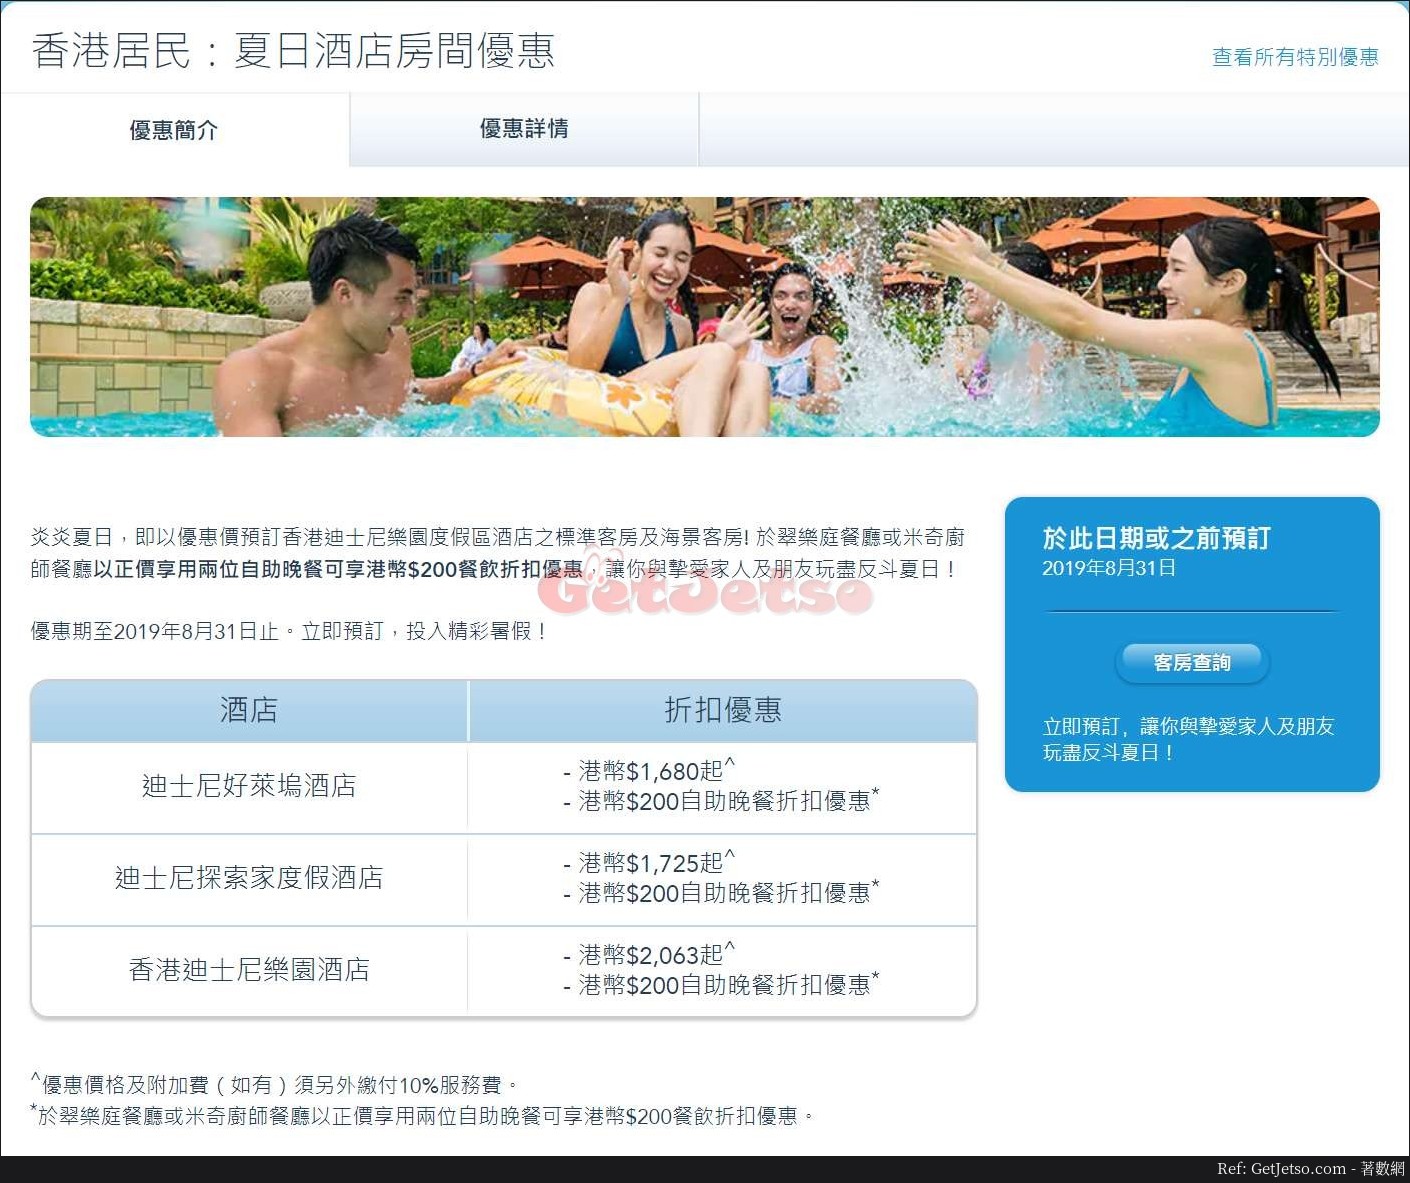 香港迪士尼樂園香港居民享夏日酒店房間優惠(至19年8月31日)圖片1